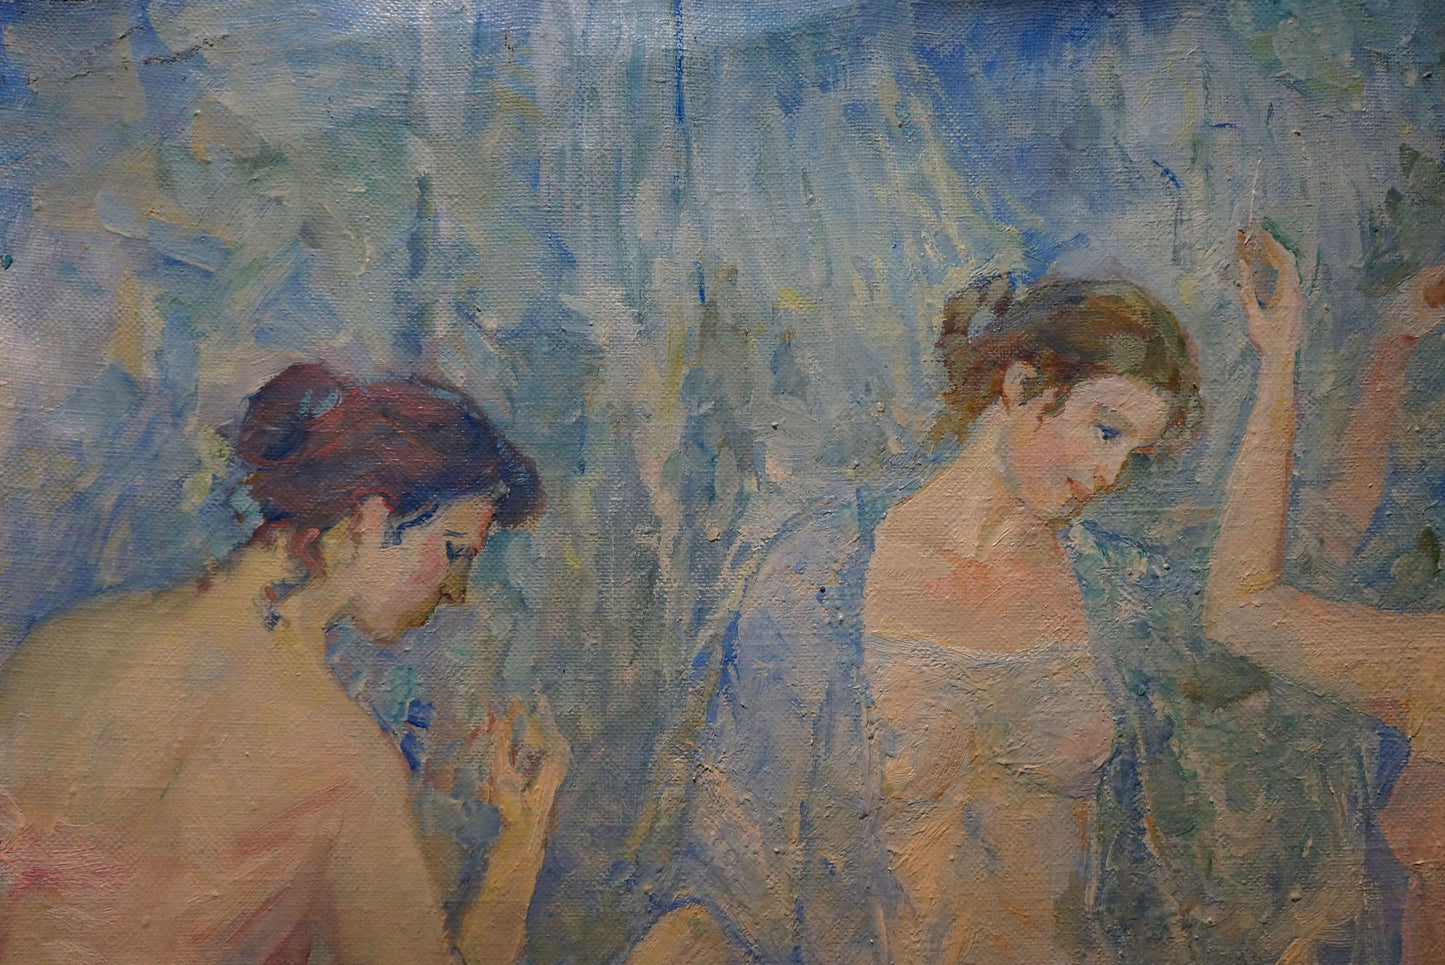 Oil painting Girls by the pond Tytarenko Odarka Anatoliivna